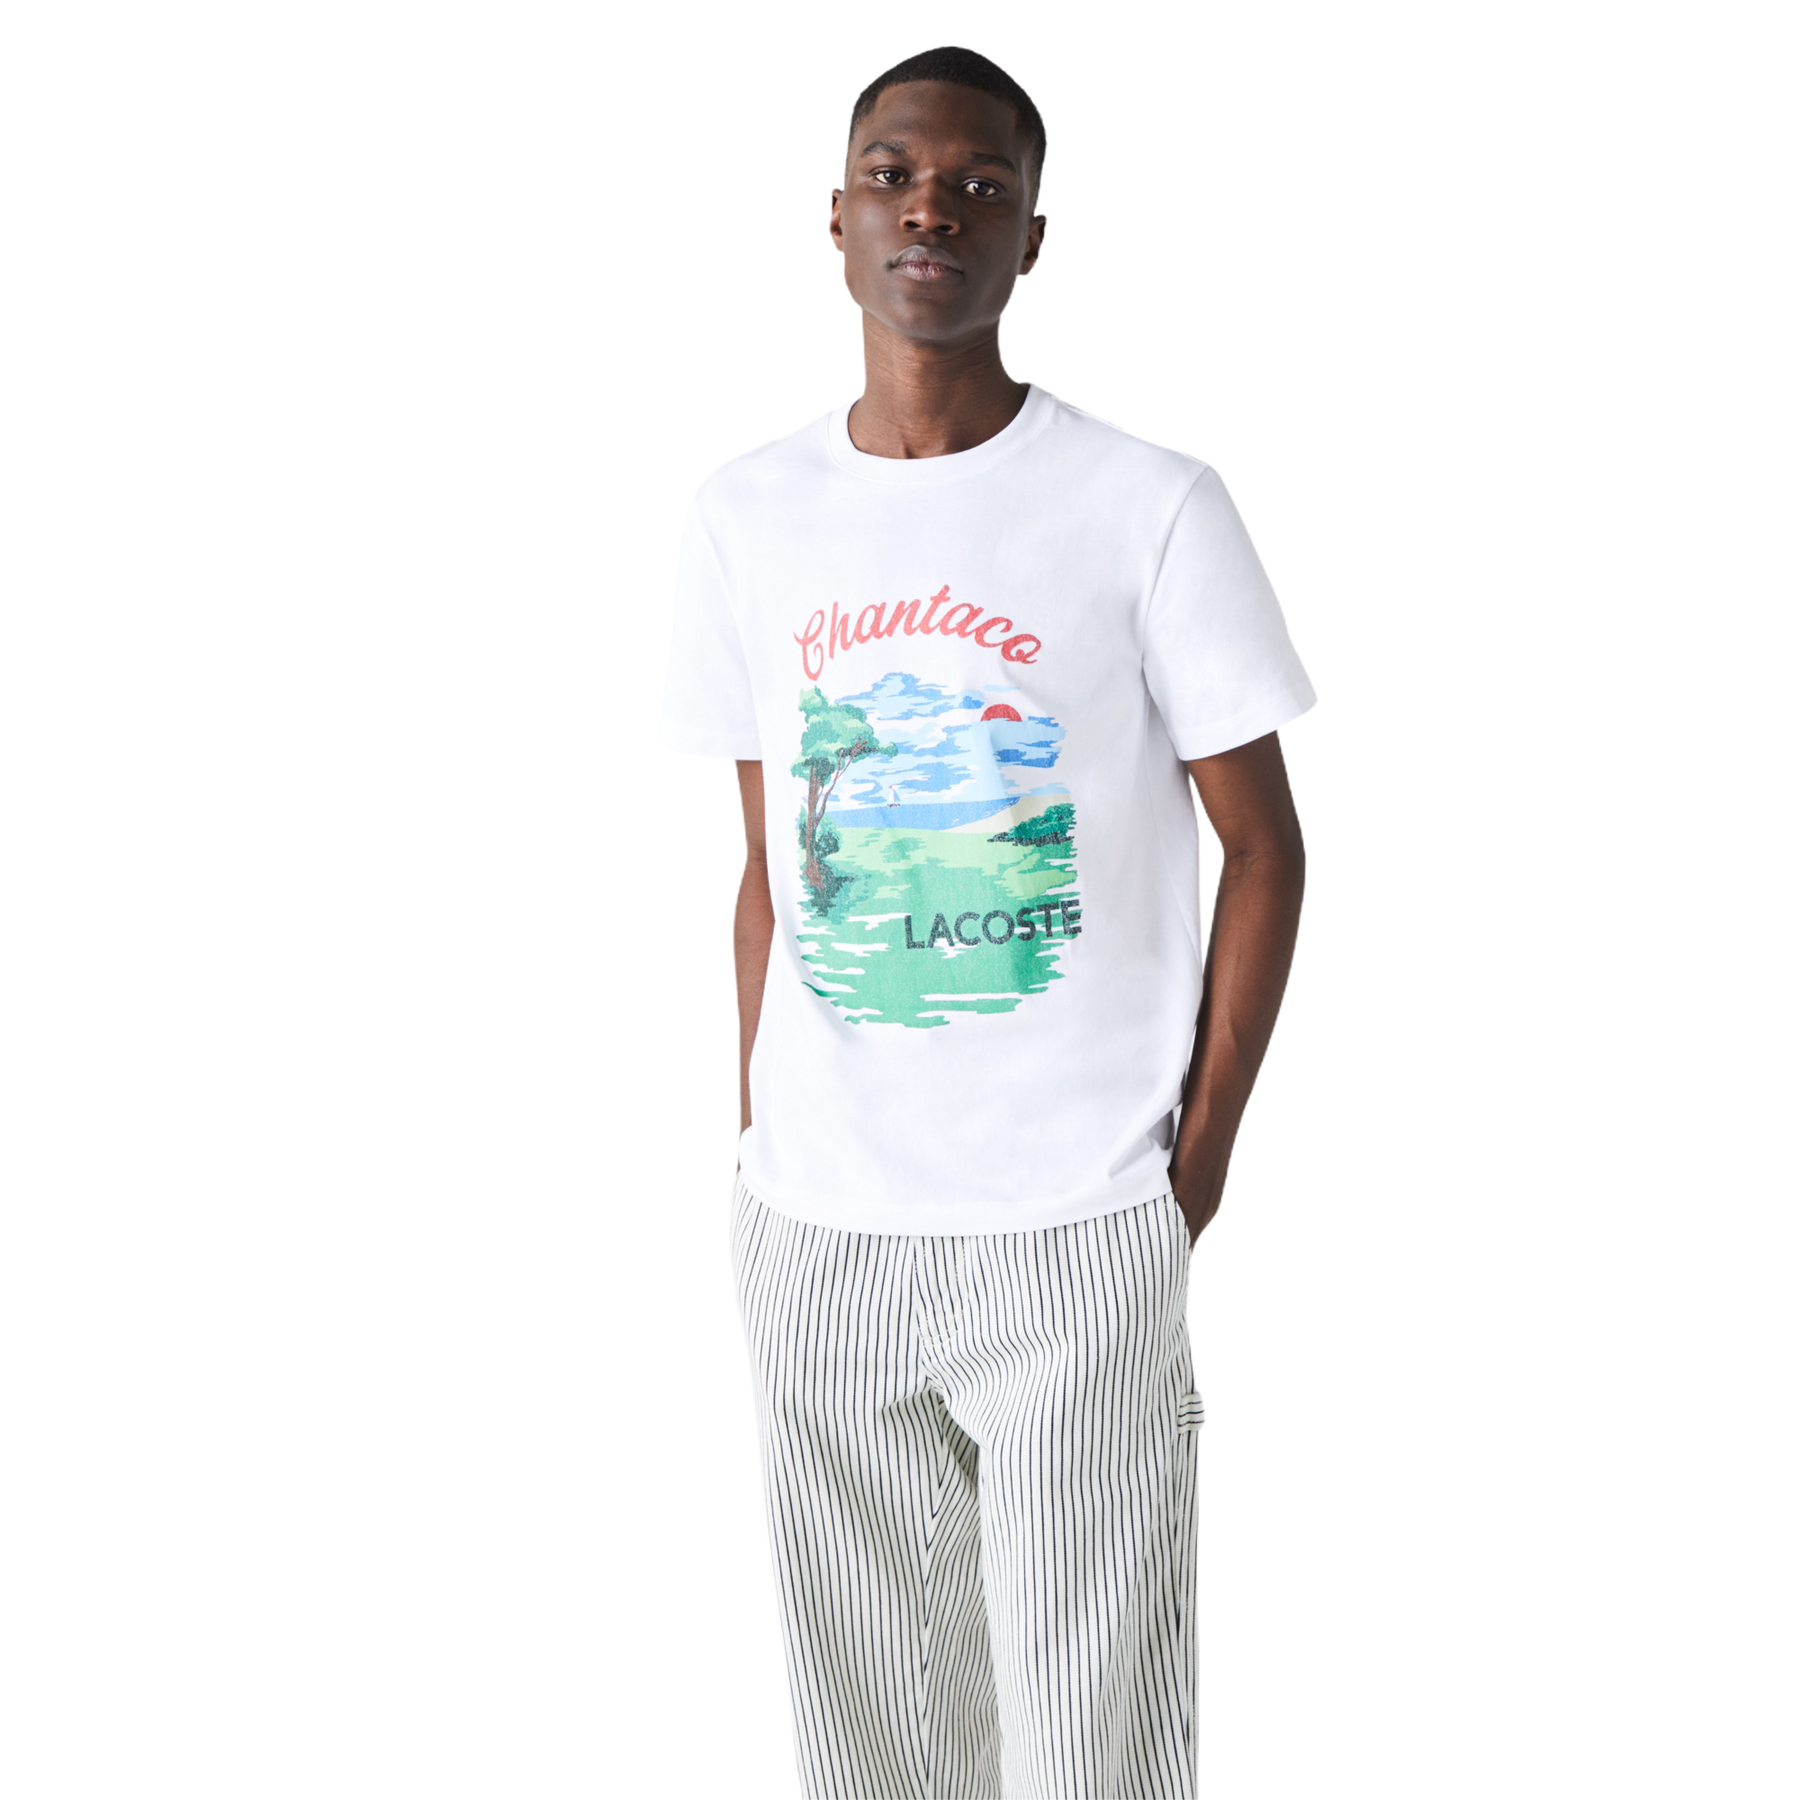 Lacoste Men's Crew Neck Landscape Print T-shirt "Chantaco" TH04